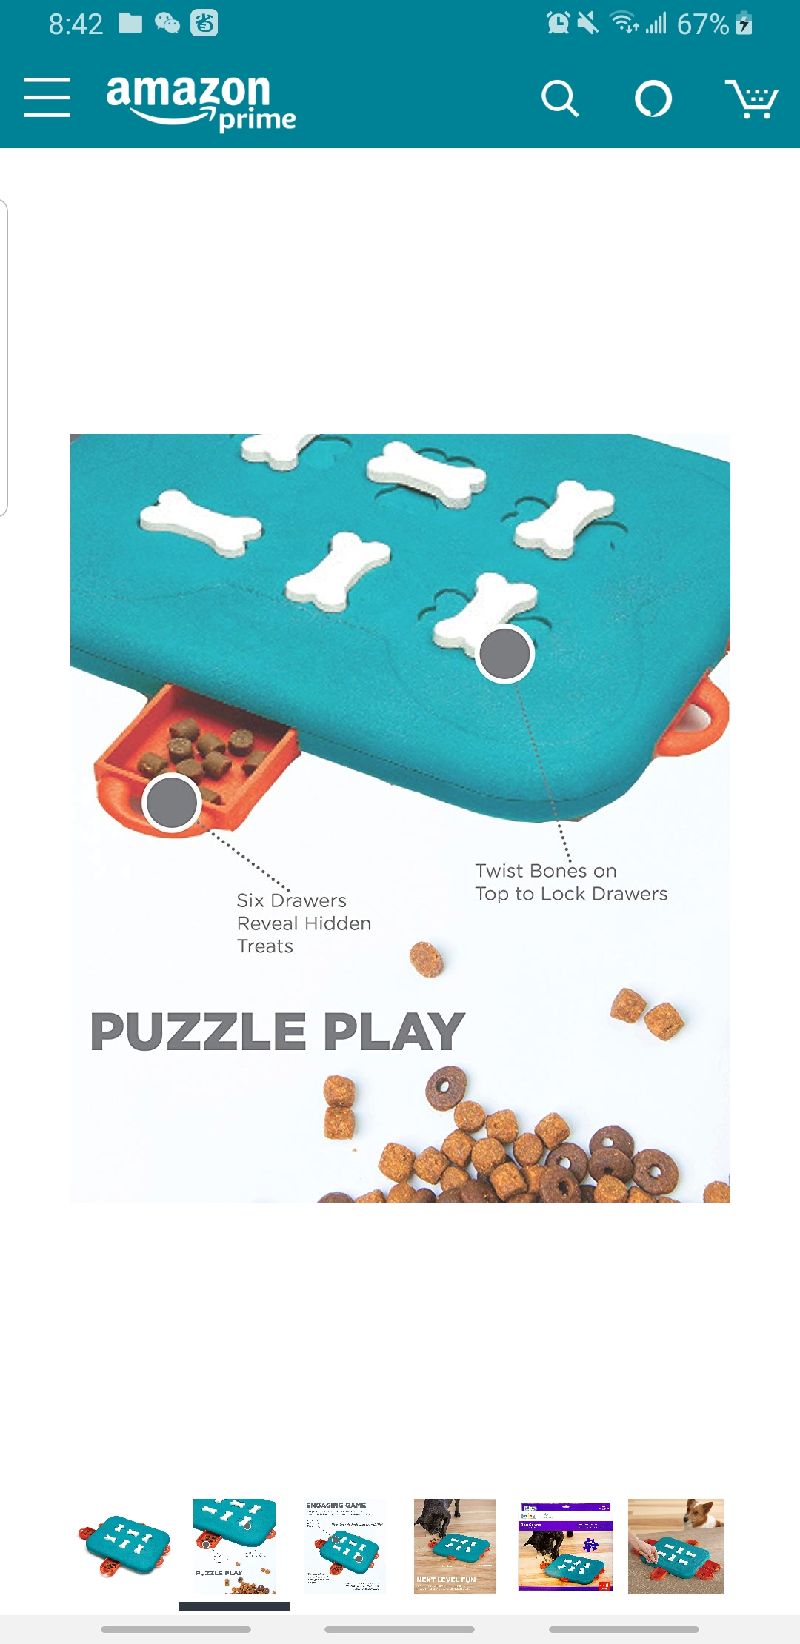 狗狗益智玩具 Gateway : Outward Hound Nina Ottosson Dog Casino Advanced Puzzle Toy - Stimulating Interactive Dog Game for Dispensing Treats : Amazon.com